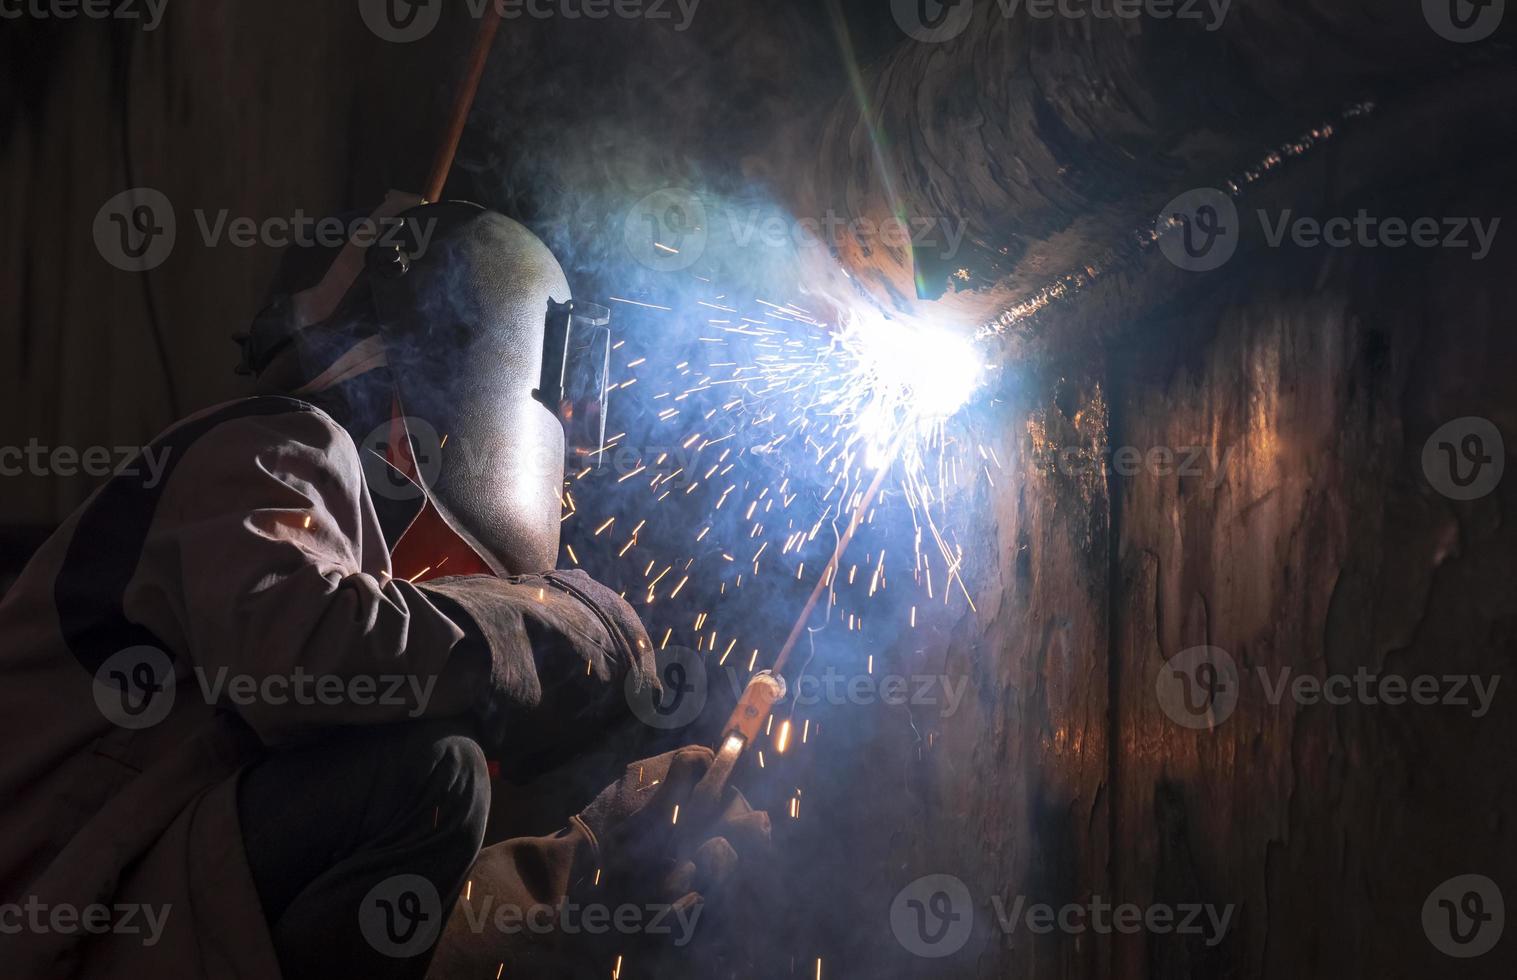 soldador na máscara de soldagem está soldando a parede de metal do antigo navio de pesca no estaleiro em estilo de tom escuro foto